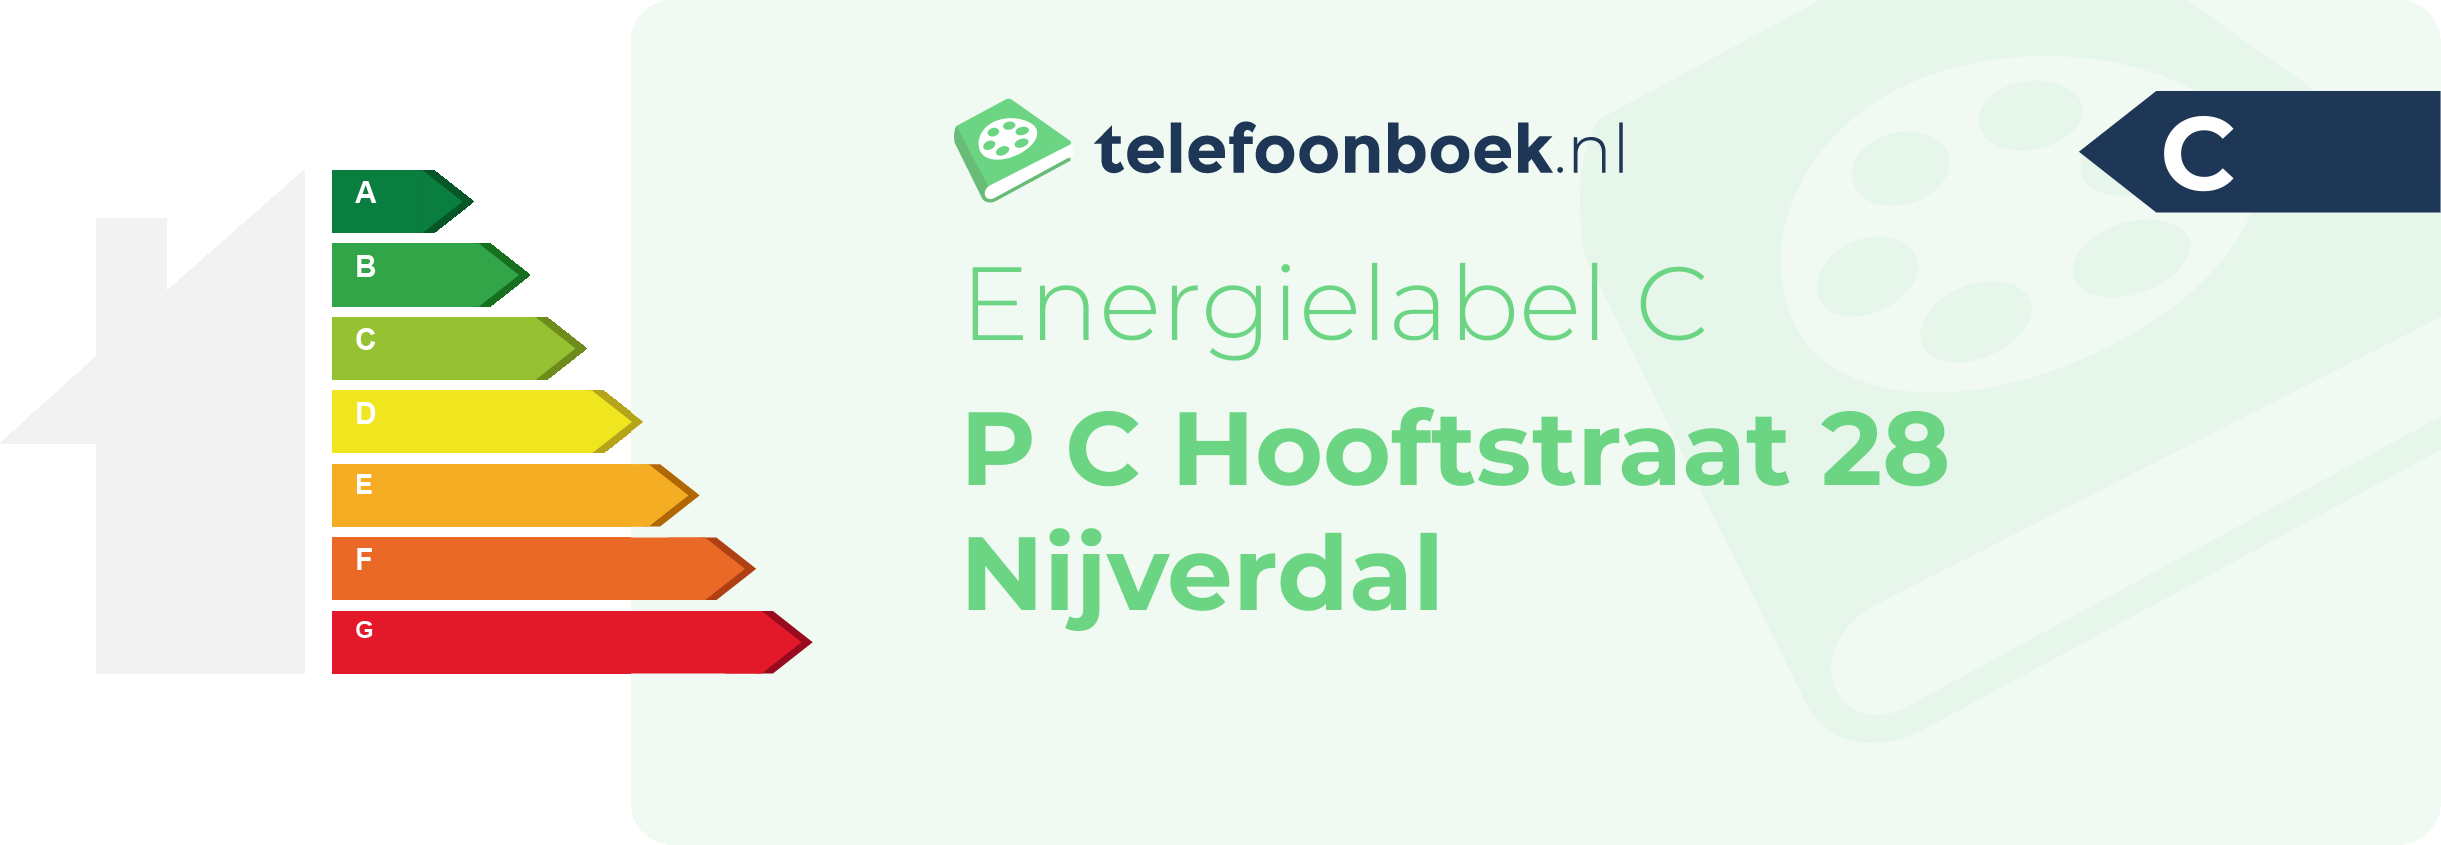 Energielabel P C Hooftstraat 28 Nijverdal